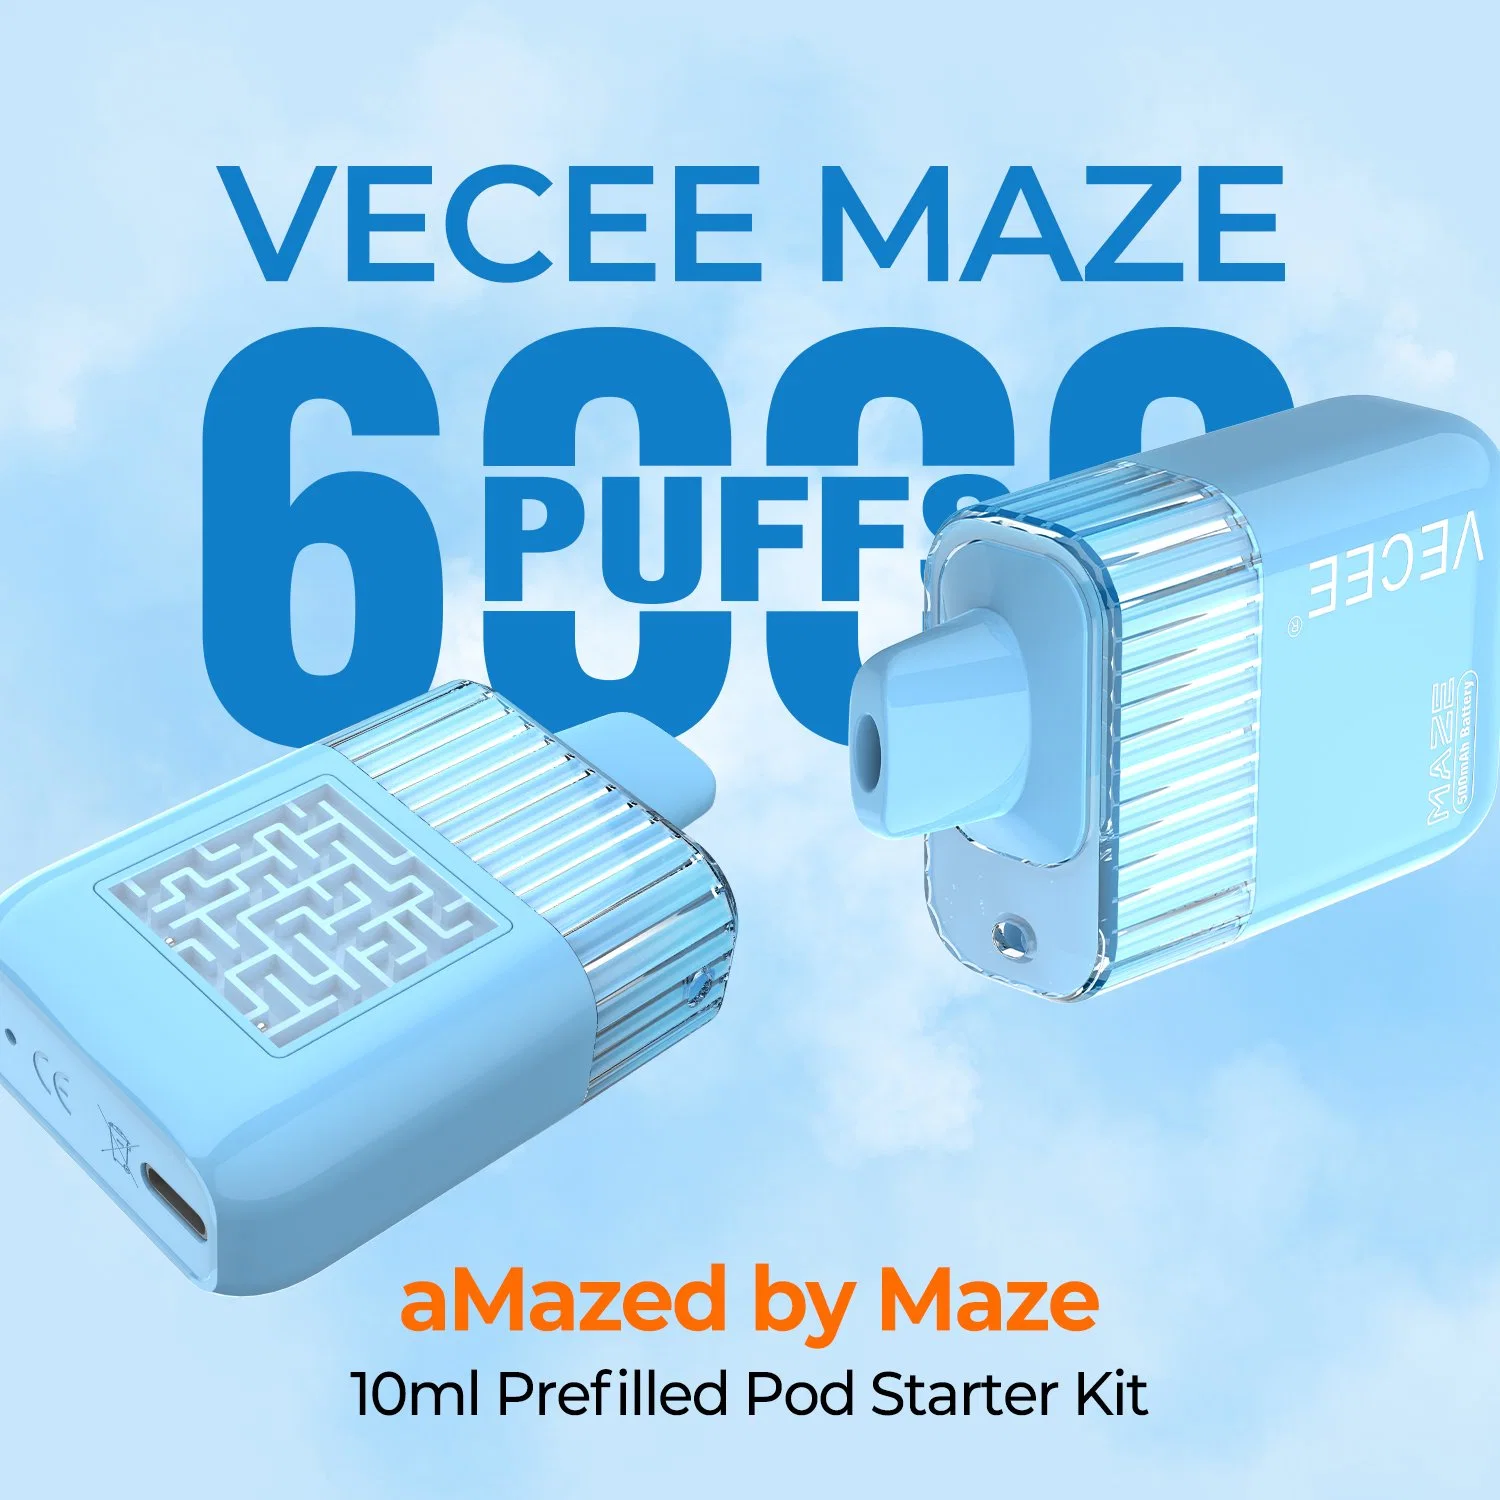 Vecee-Maze Disposable Pod Wholesale Custom Vaporizer Pen 5% Salt Nicotine Rechargeable 6000 Puff Bar Best E Cigarette Electronic Hookah